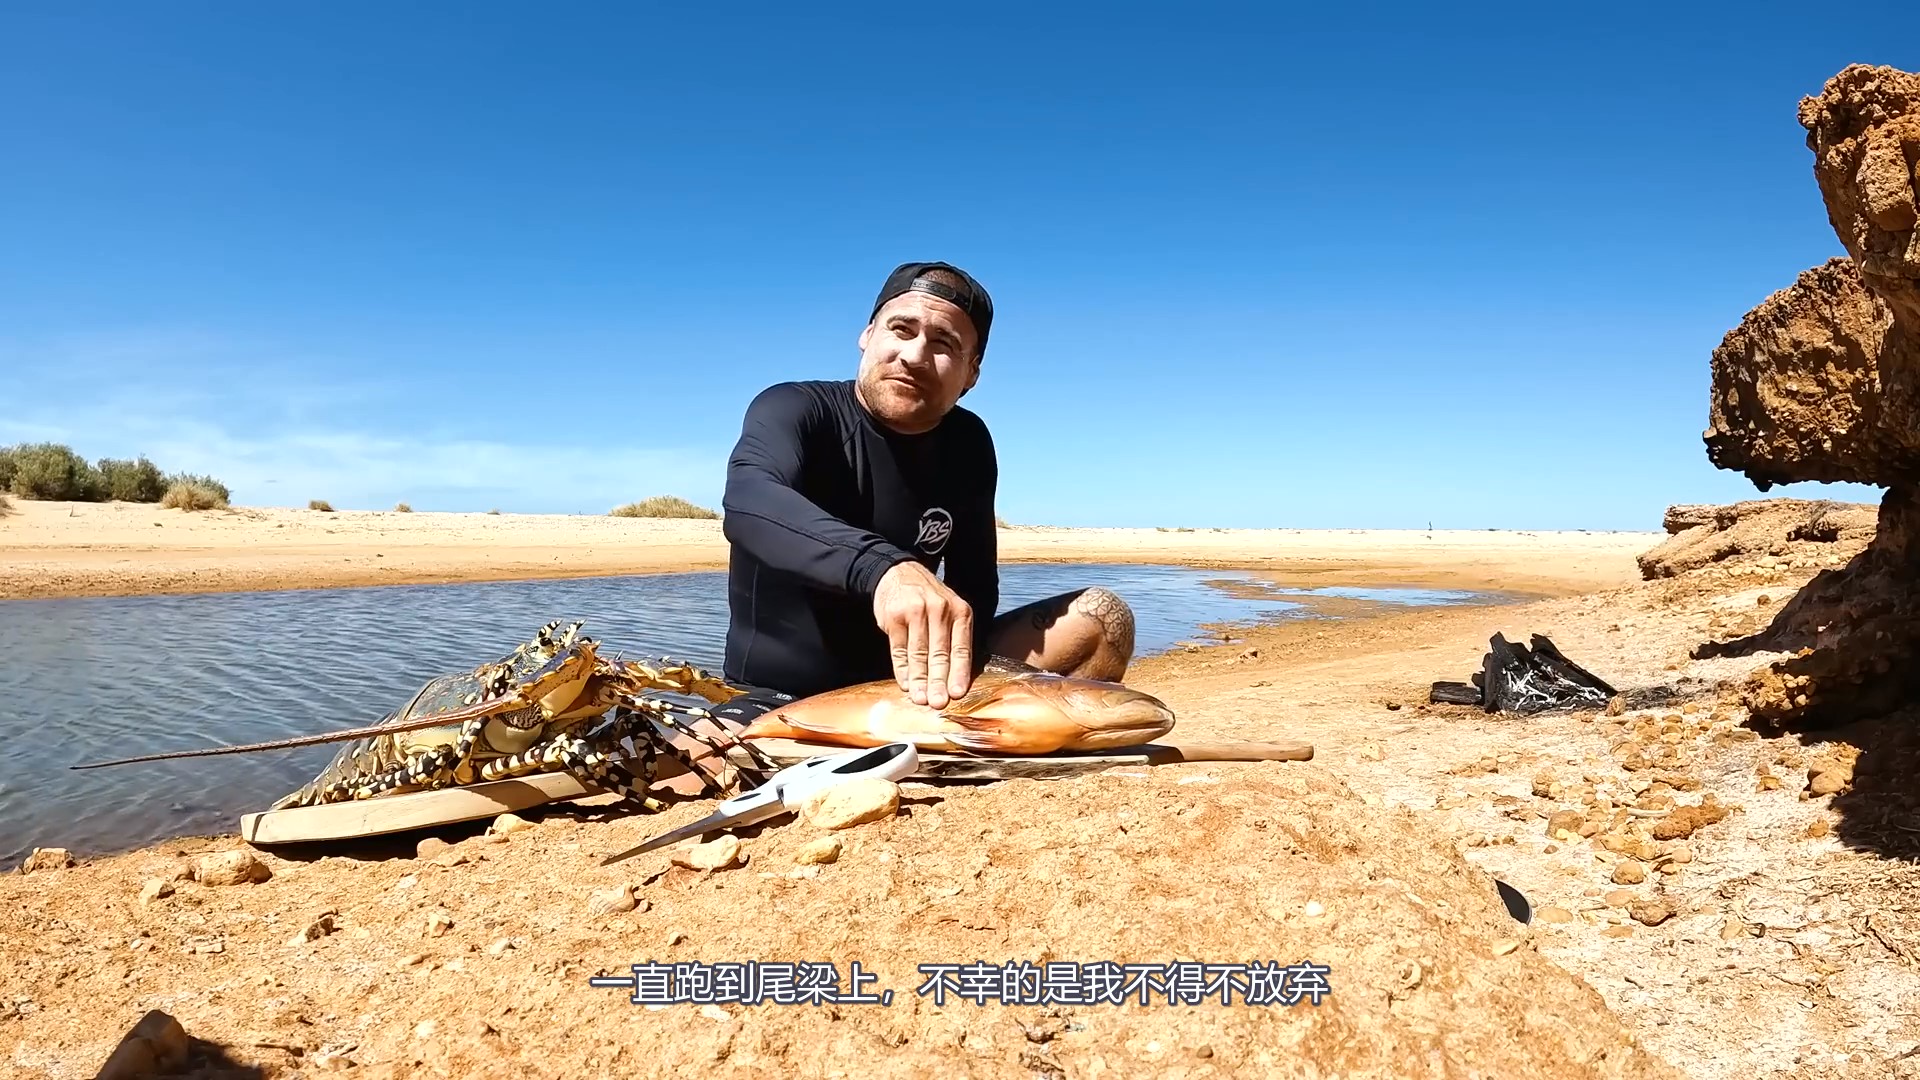 巨型彩虹龙虾在偏远的海滩上捕捉和烹饪